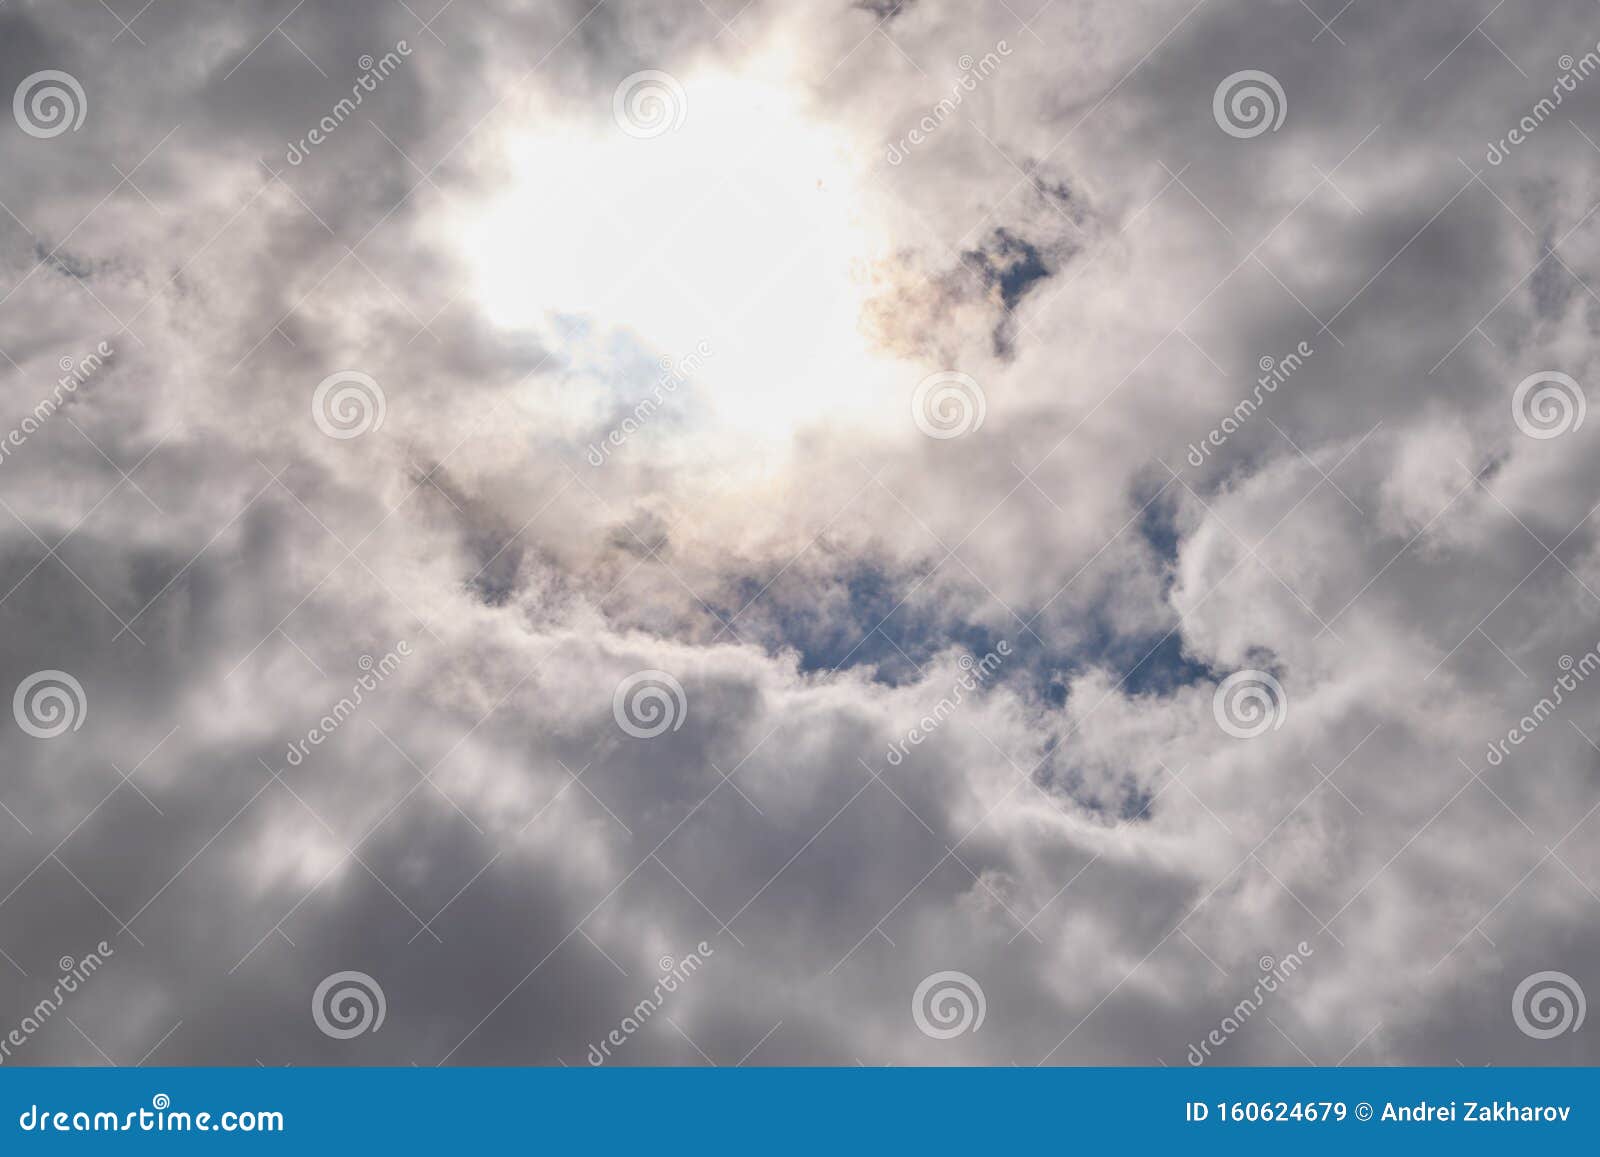 Wie sieht eine Cumulus Wolke aus?